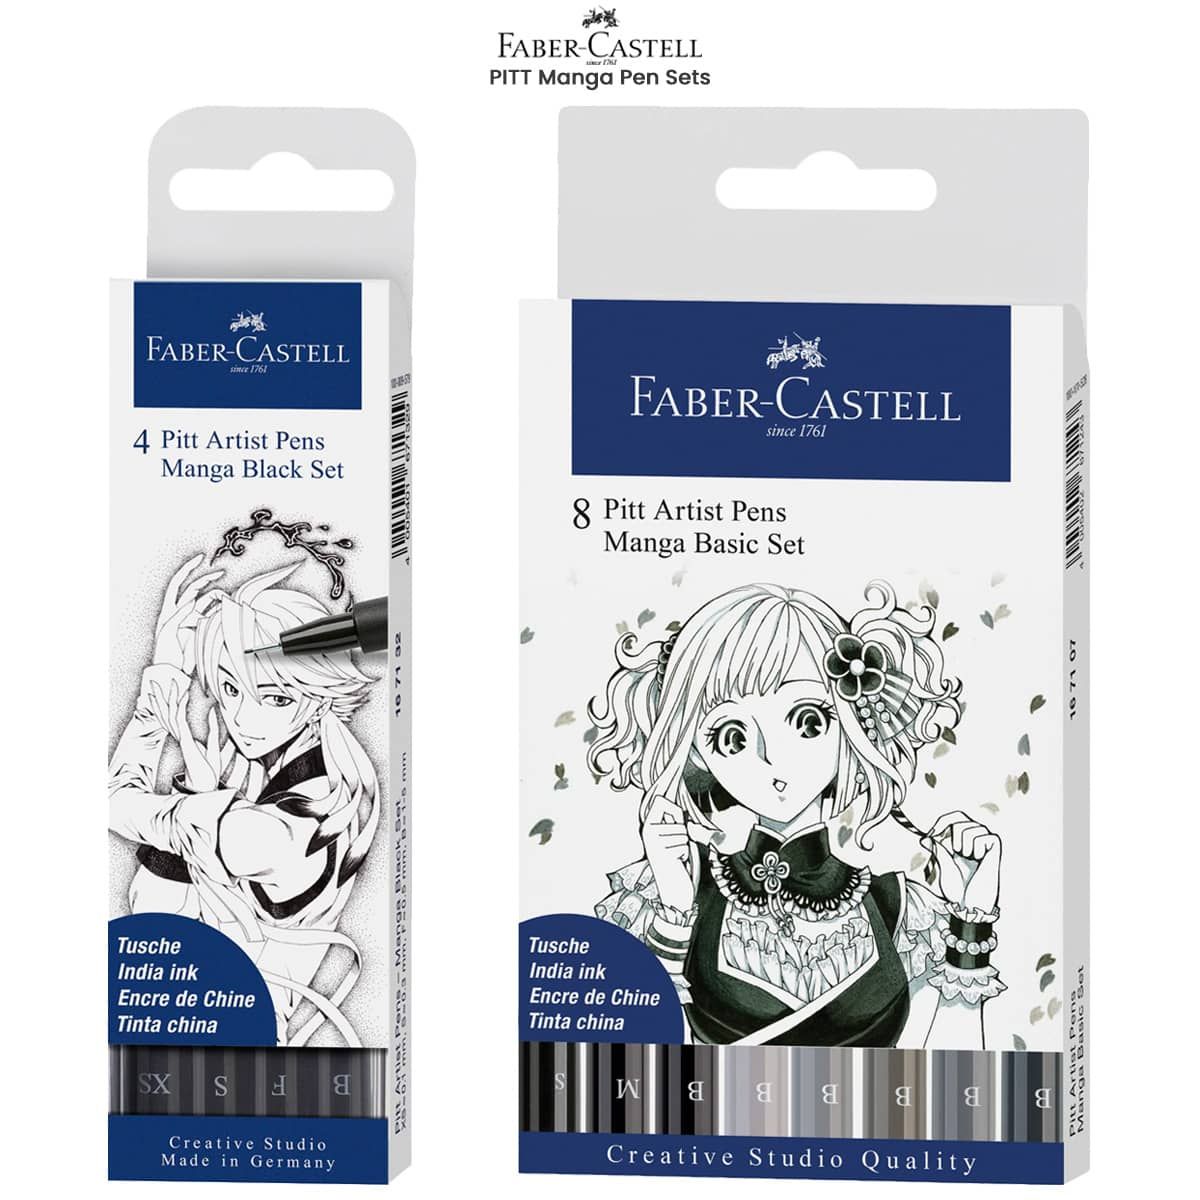 Faber-Castell PITT Artist Manga Pen Sets